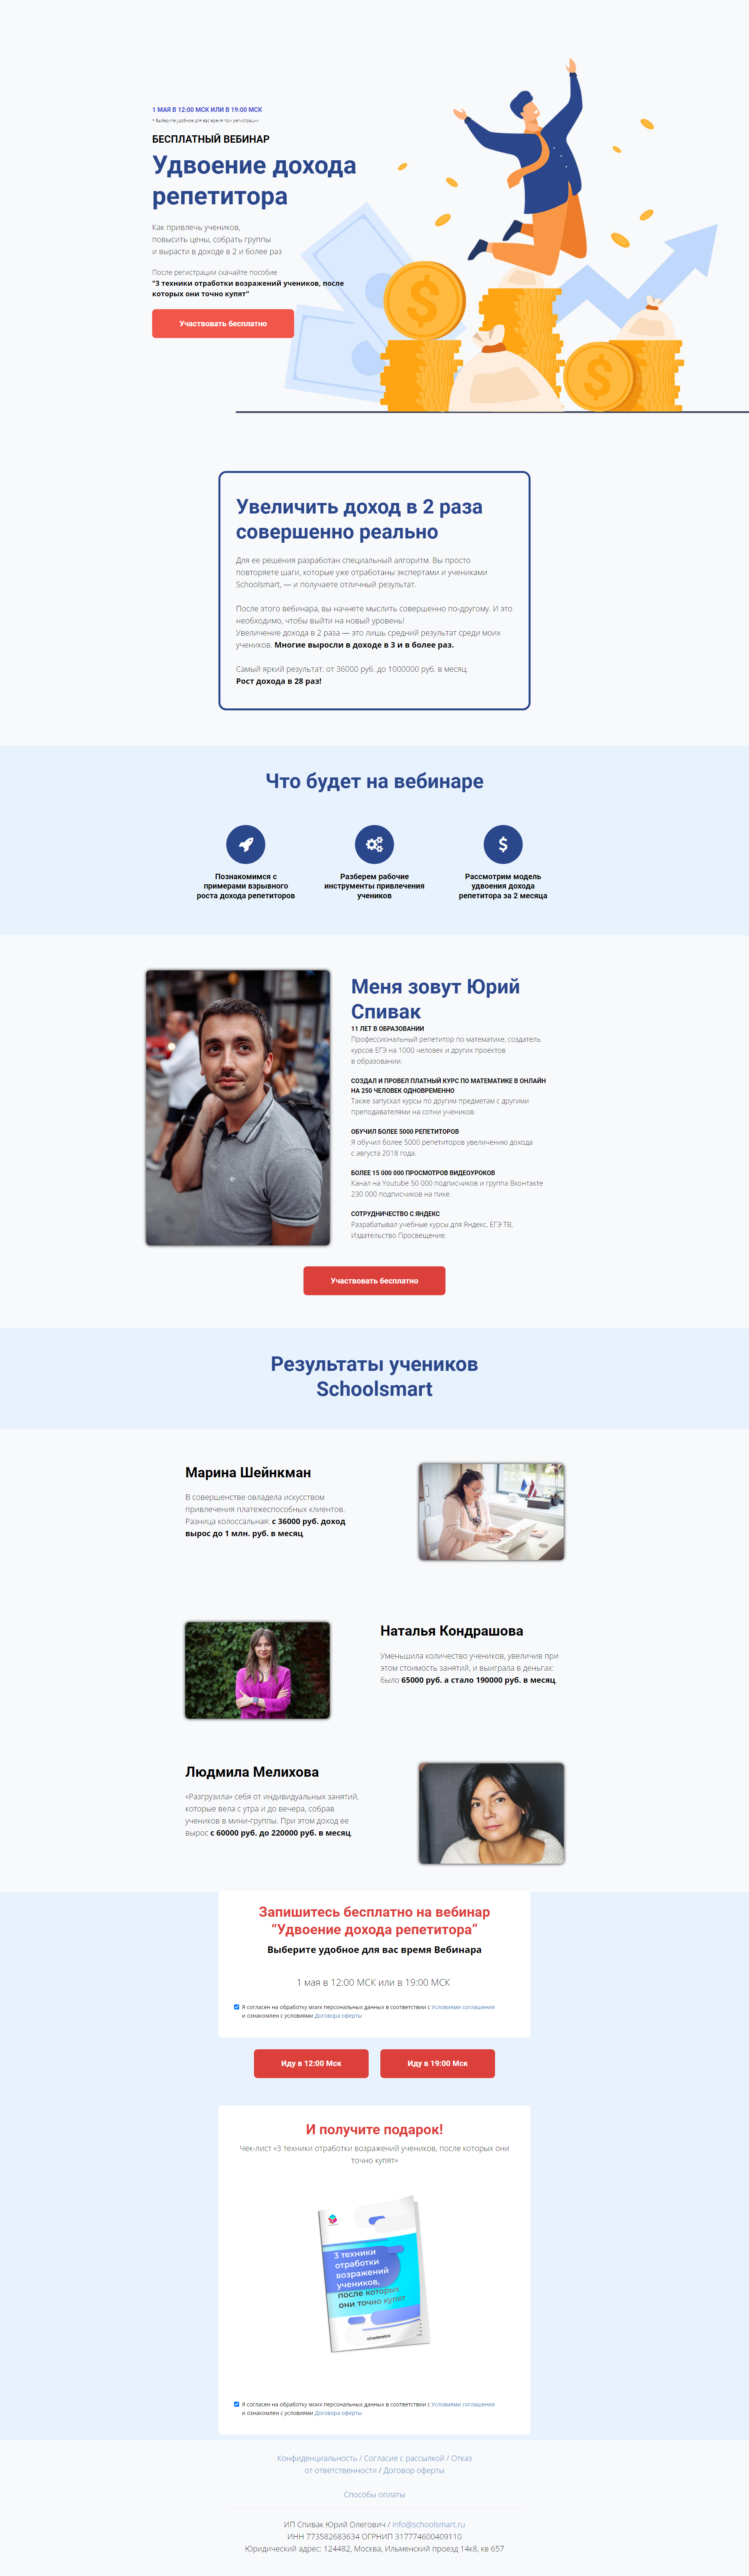 Пример schoolsmart.ru сайта из рекламной выдачи